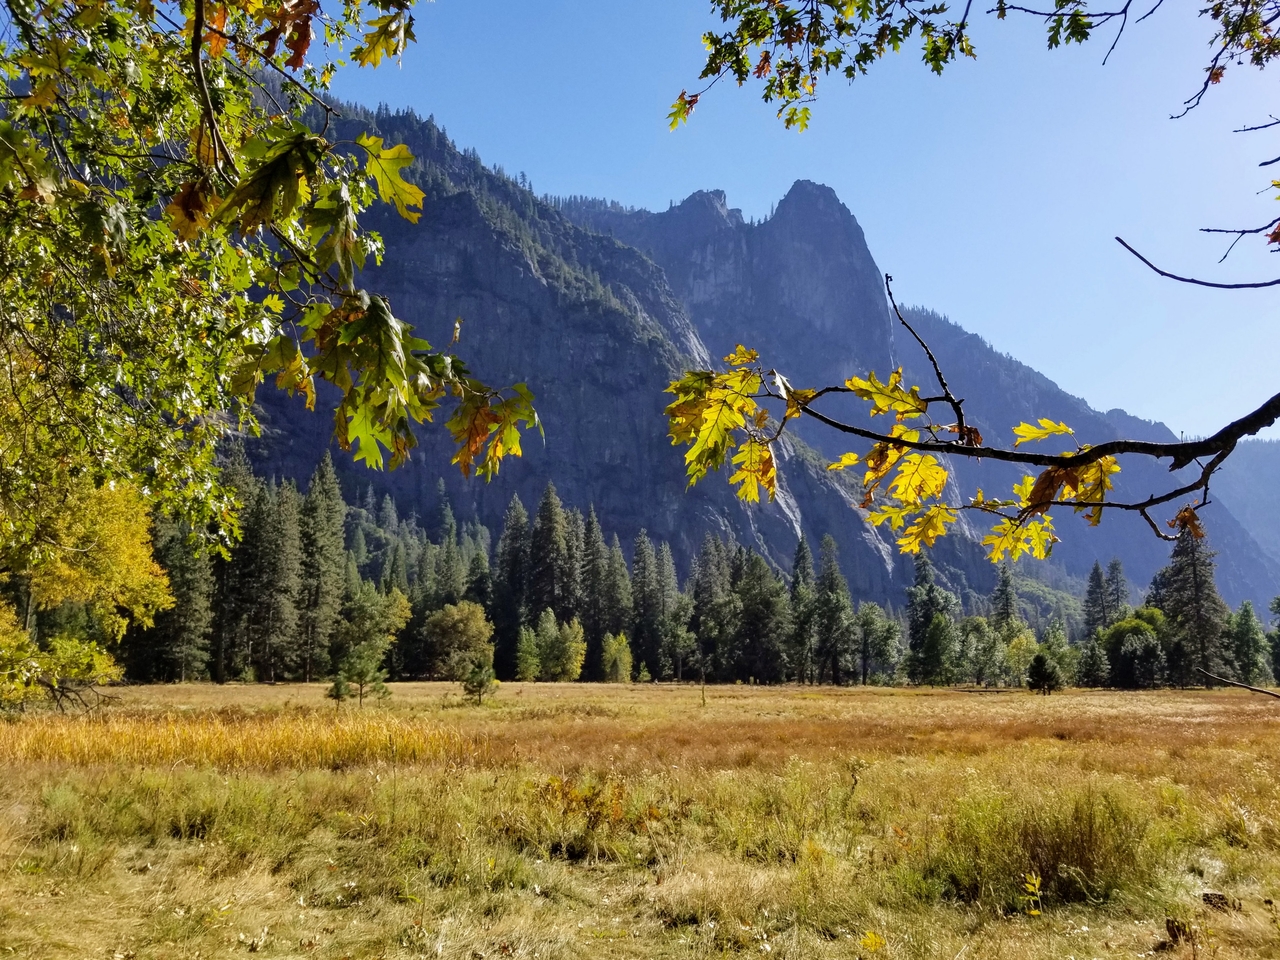 Sentinel Rock in Autumn photo by Yosemite Conservancy/Gretchen Roecker